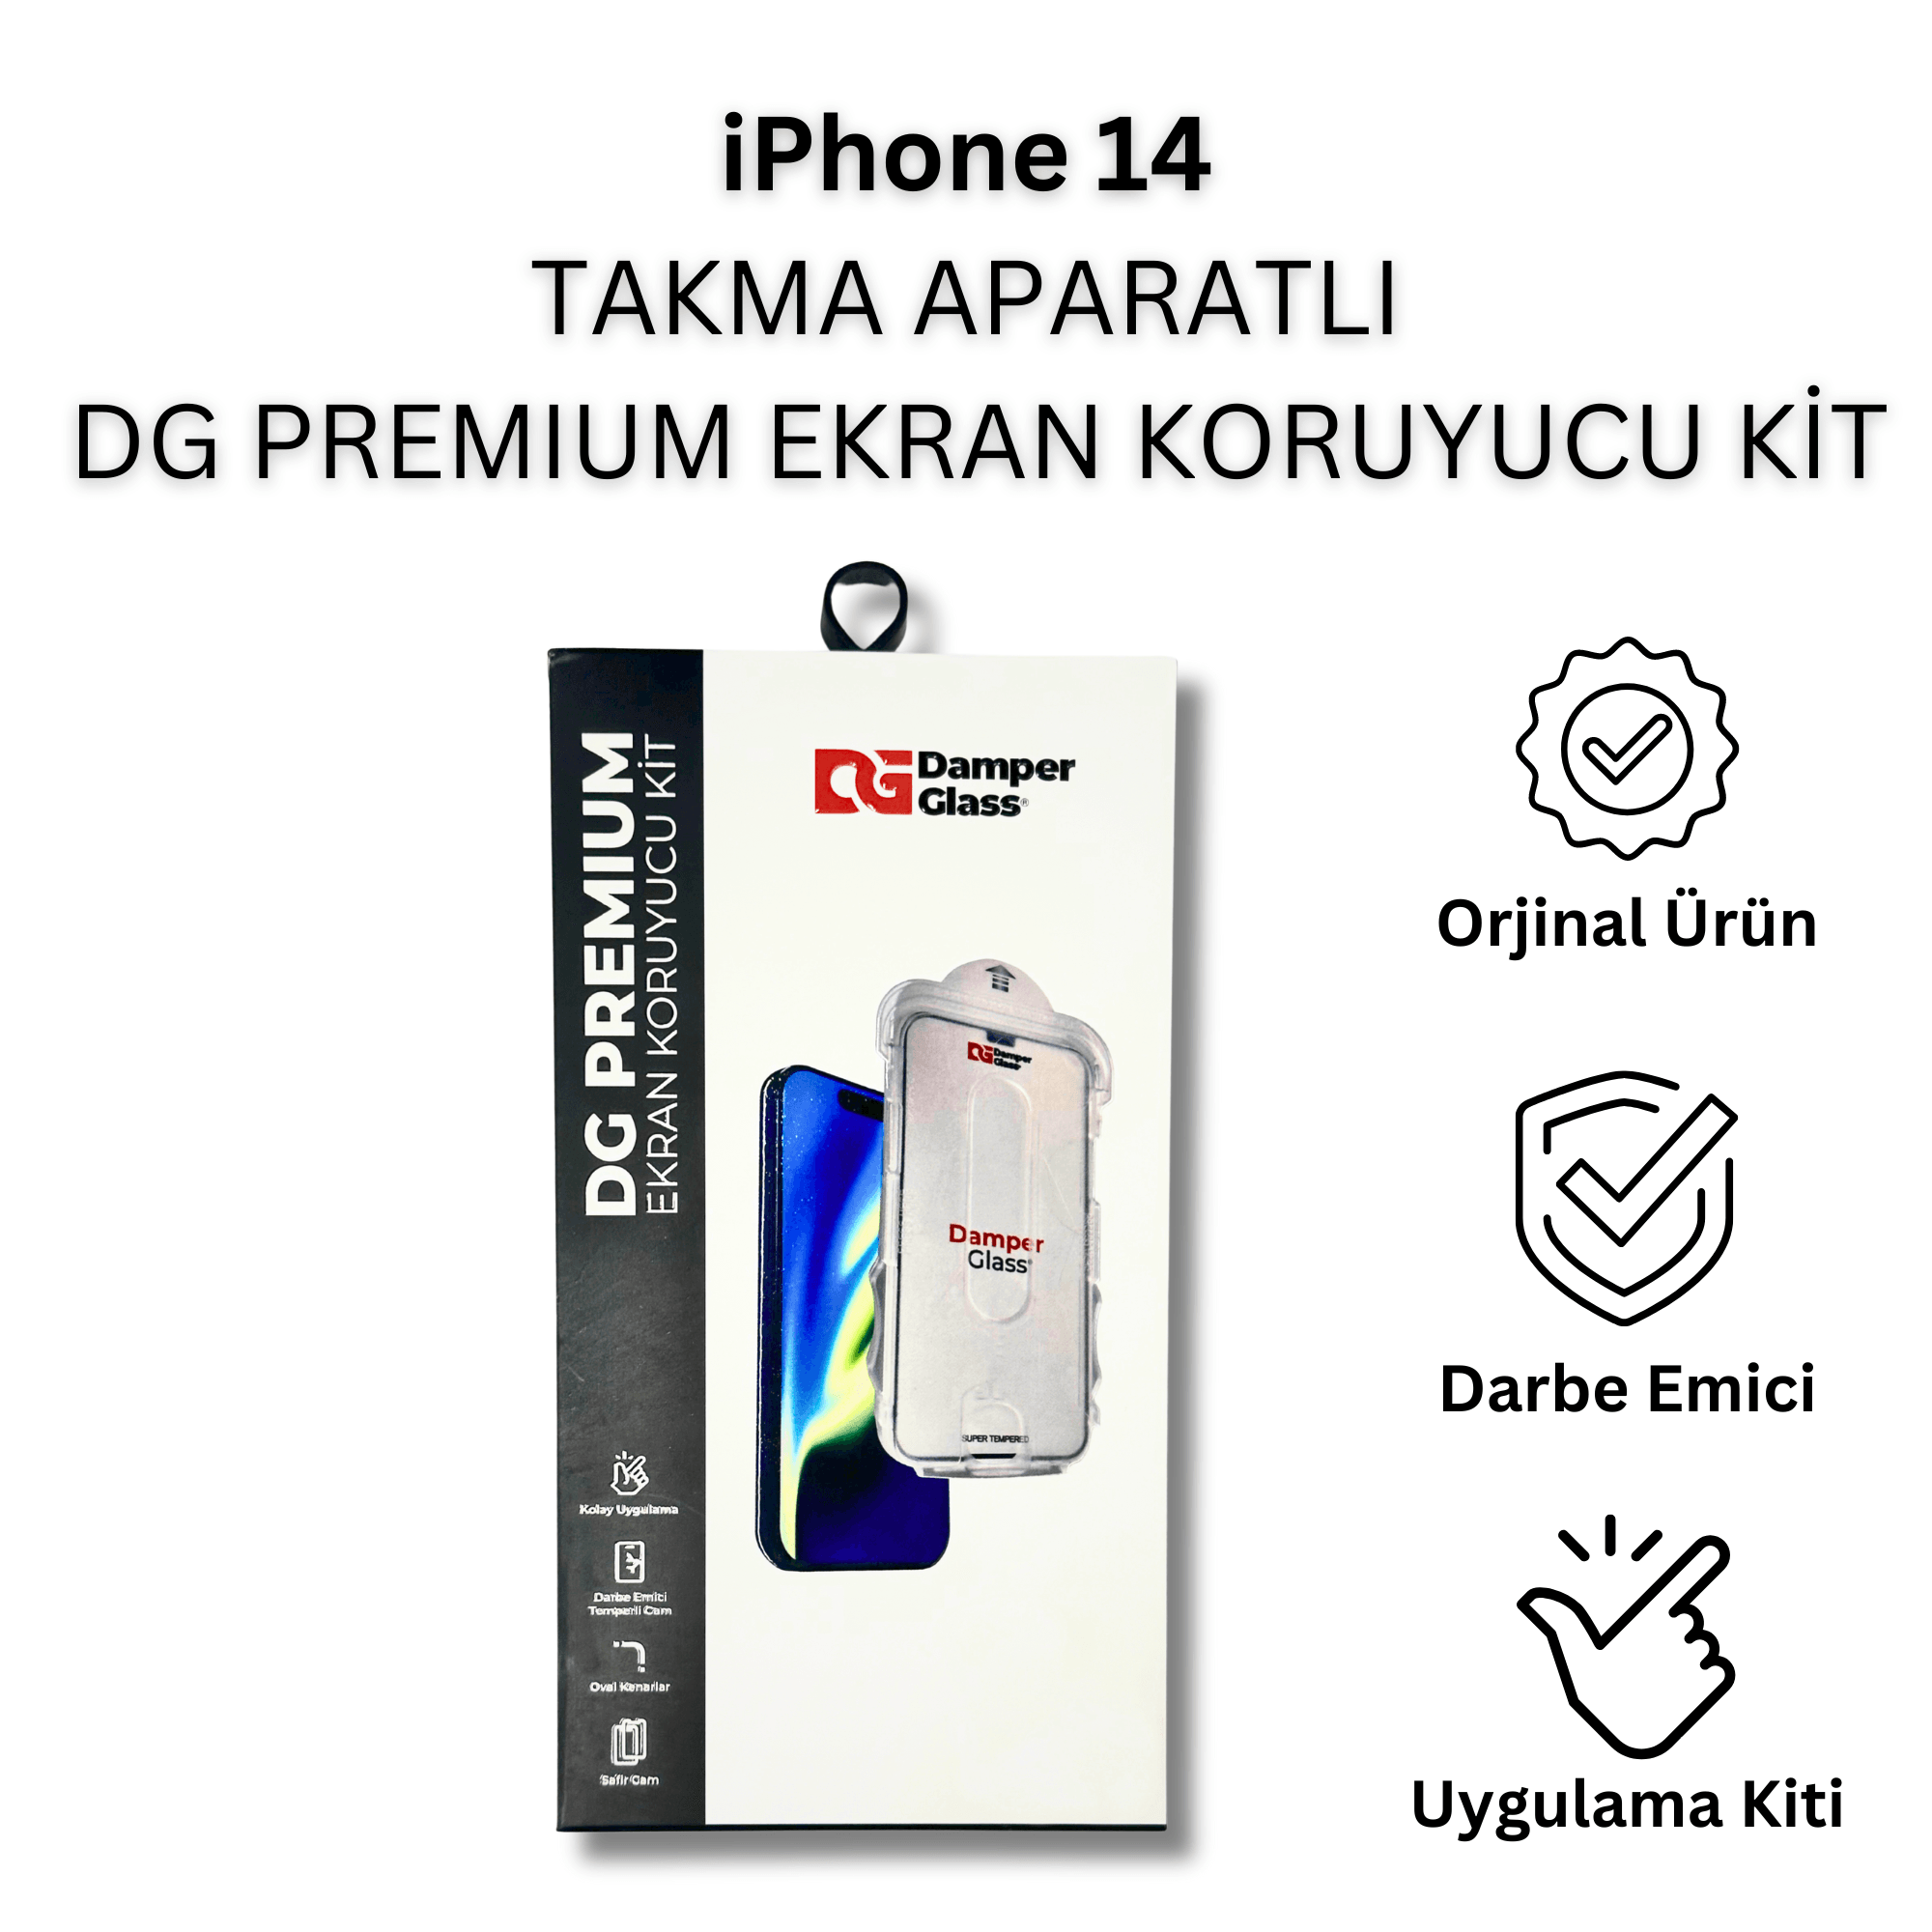 iPhone 14 DG Premium Takma Aparatlı Darbe Emici Ekran Koruyucu Kit